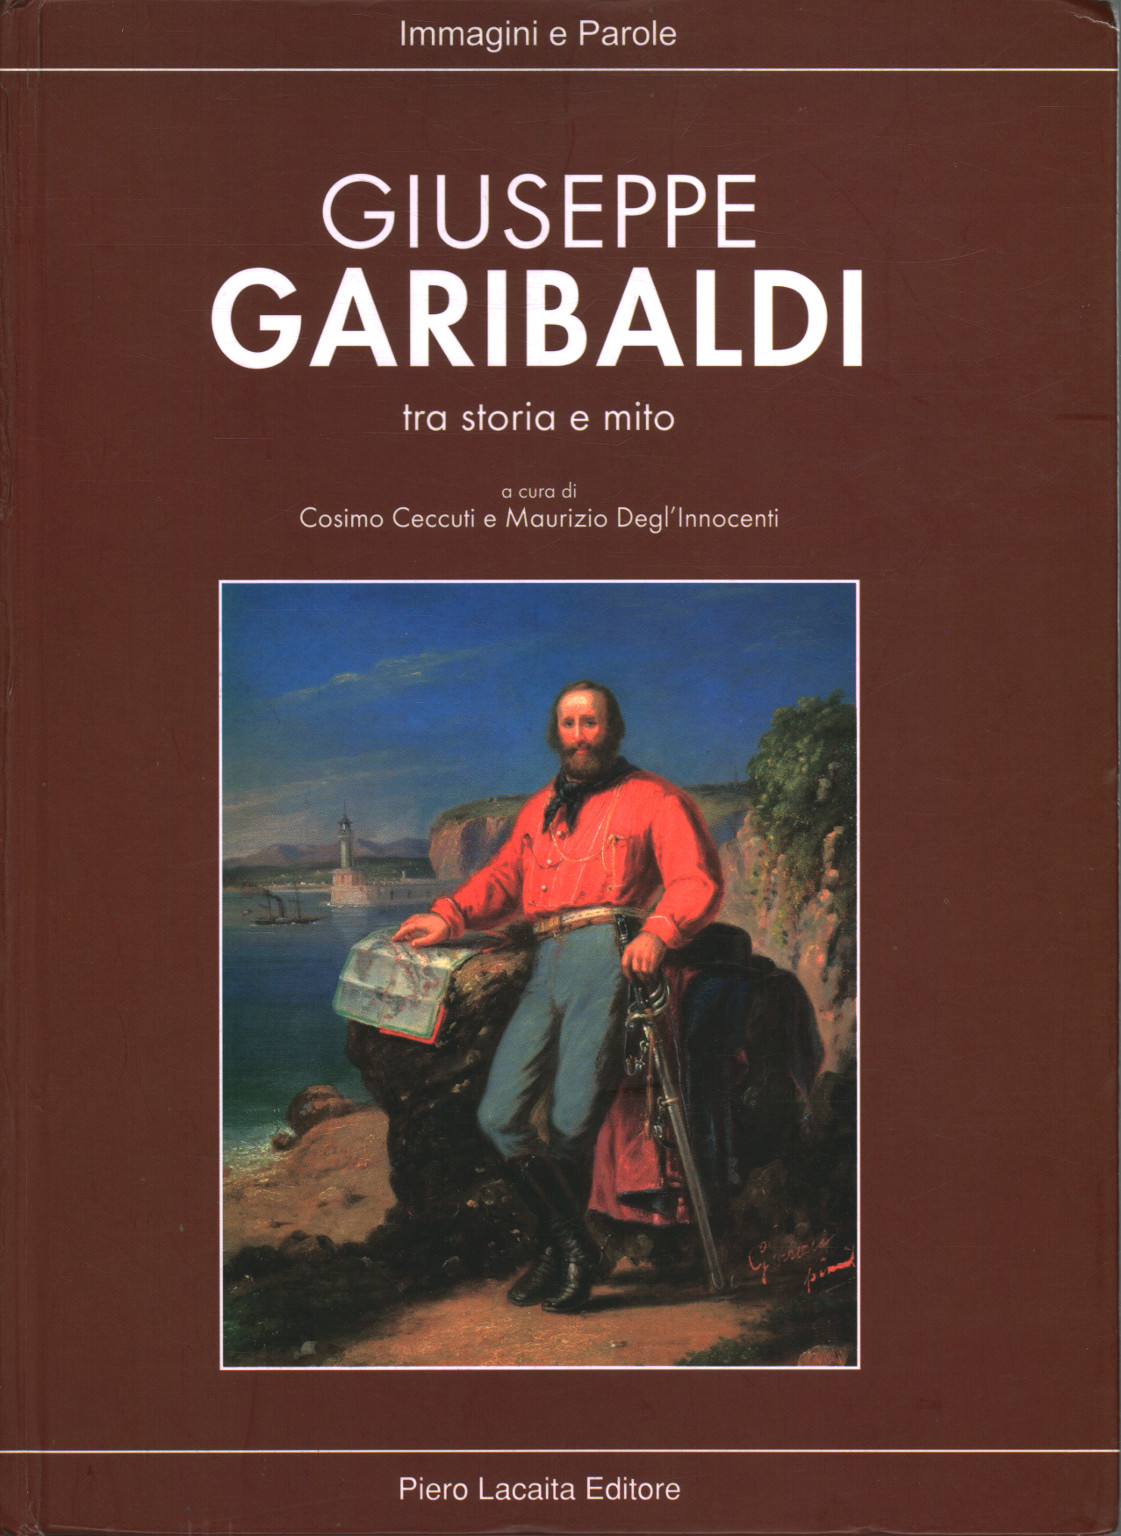 Giuseppe Garibaldi tra storia e mito, s.a.